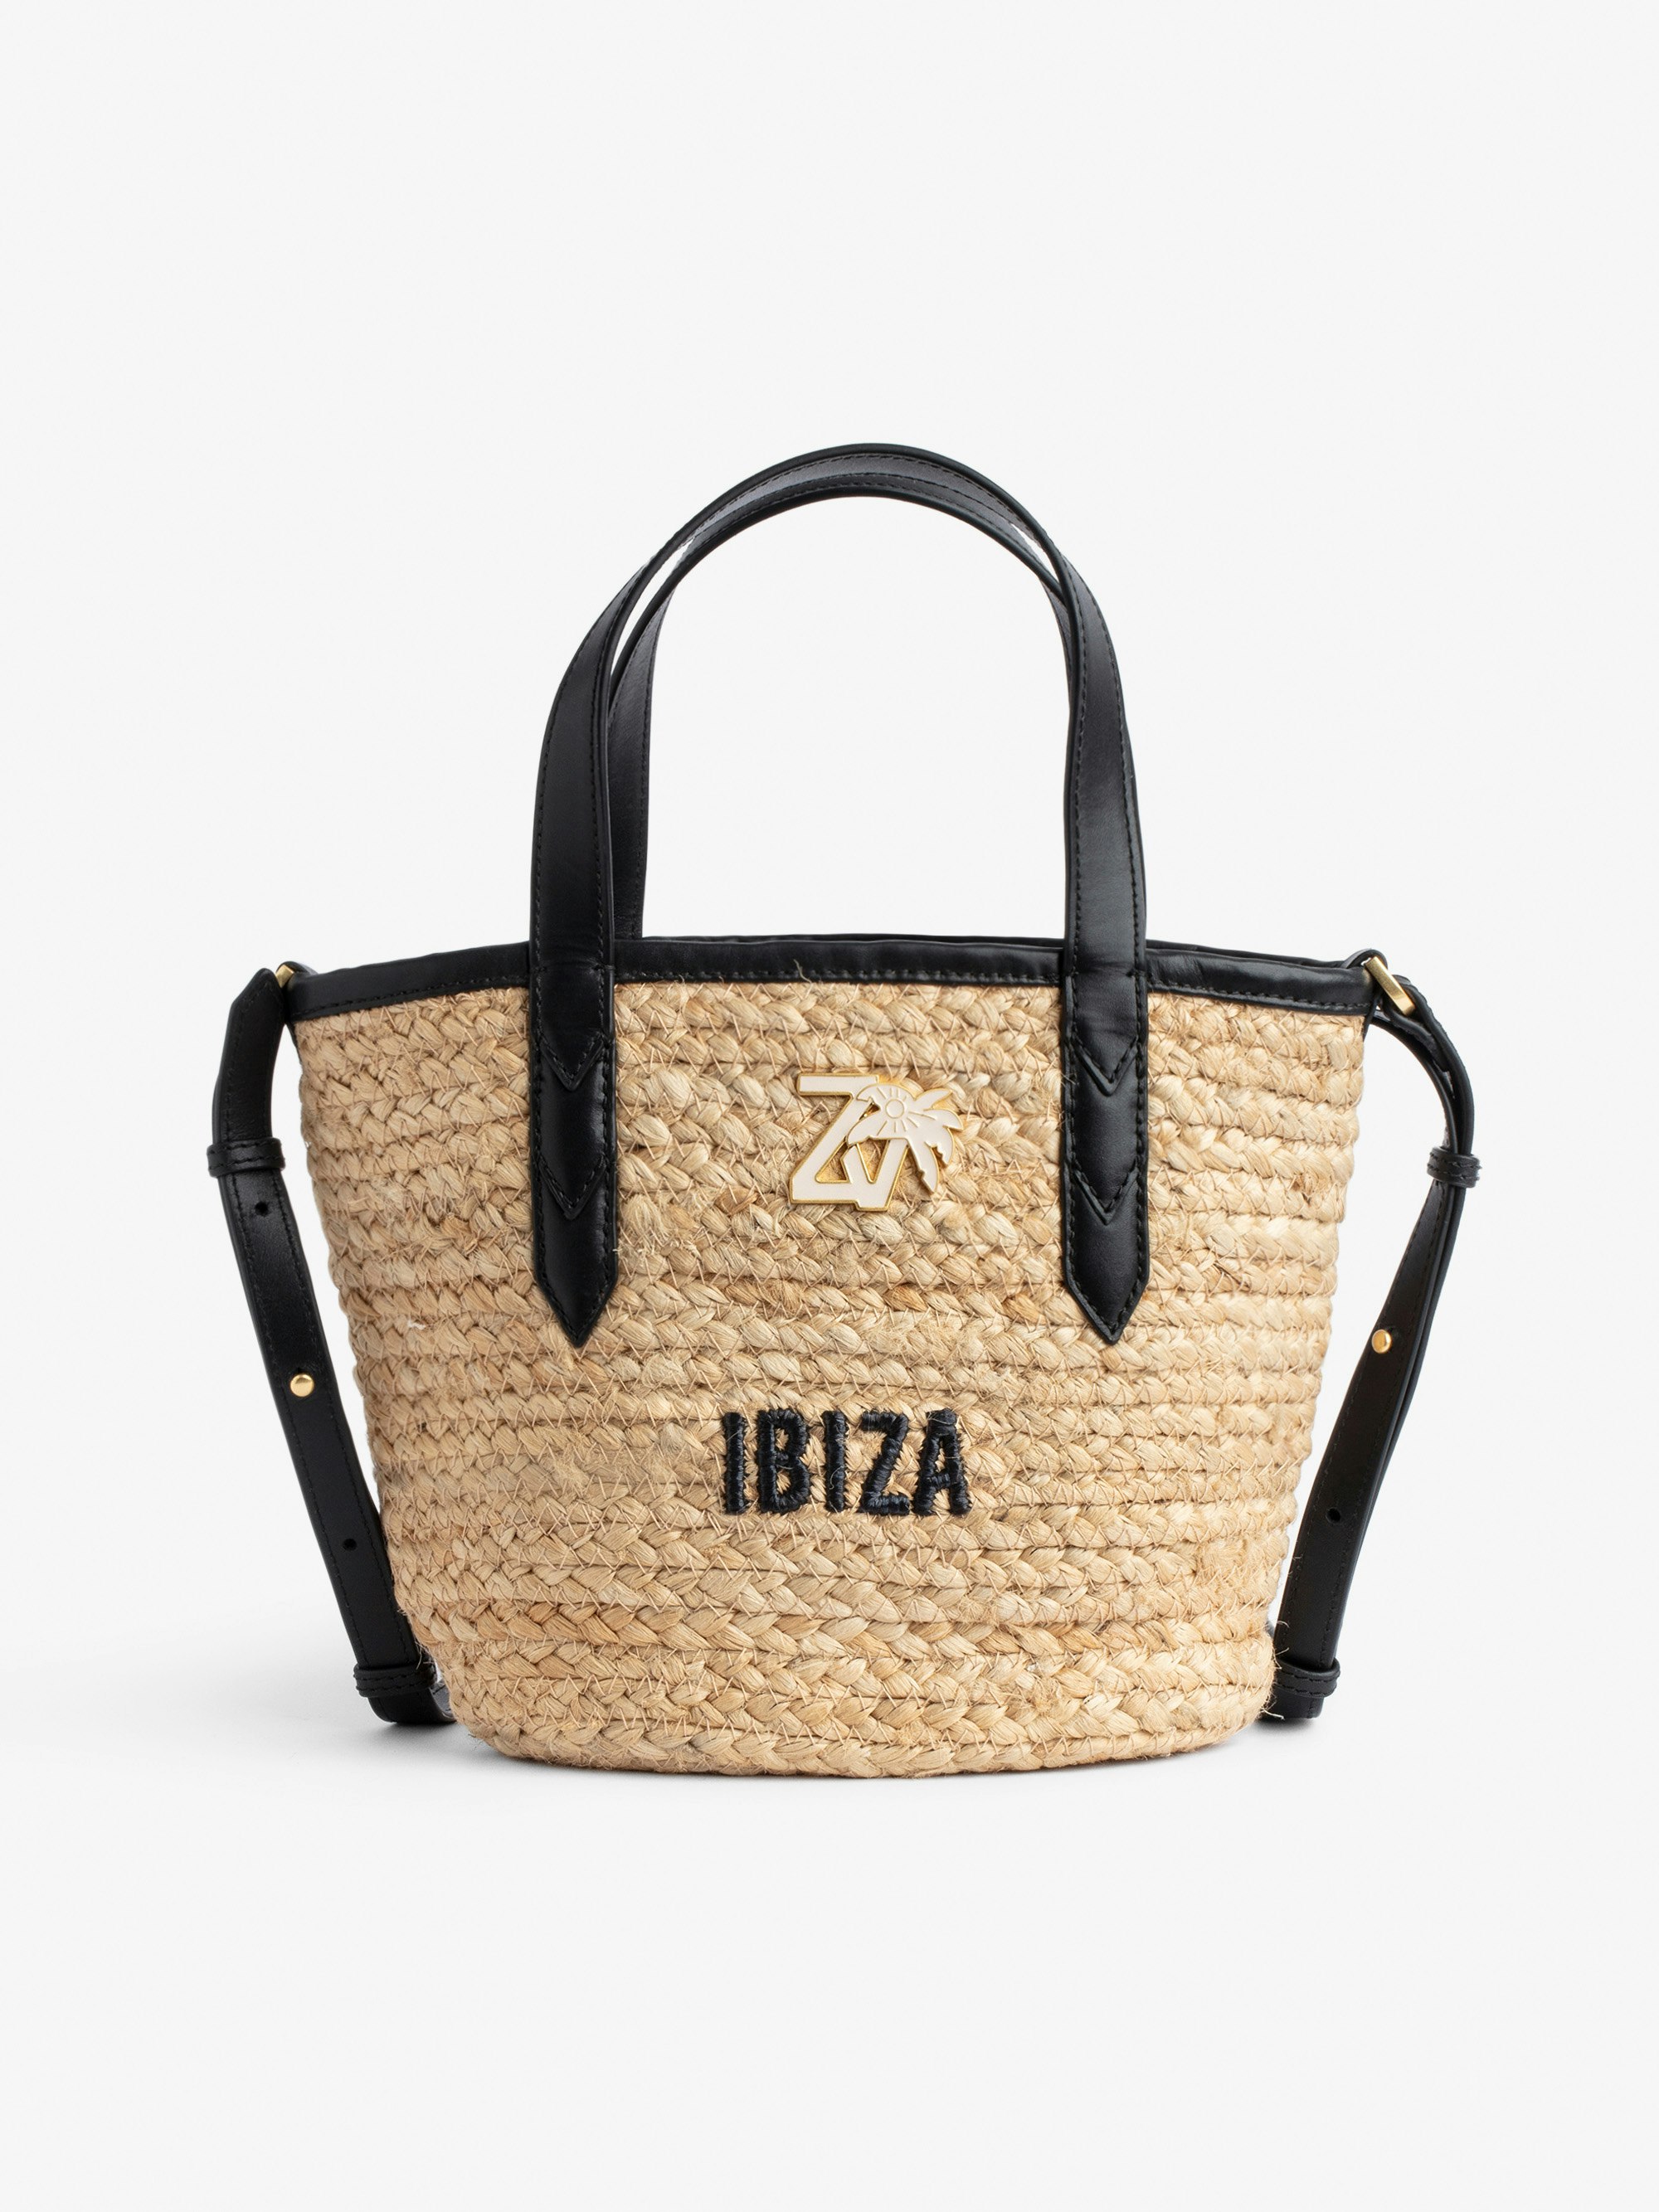 Sac Le Baby Beach Bag - Sac en paille à bandoulière en cuir noir, brodé "Ibiza" et orné d'un charm ZV.